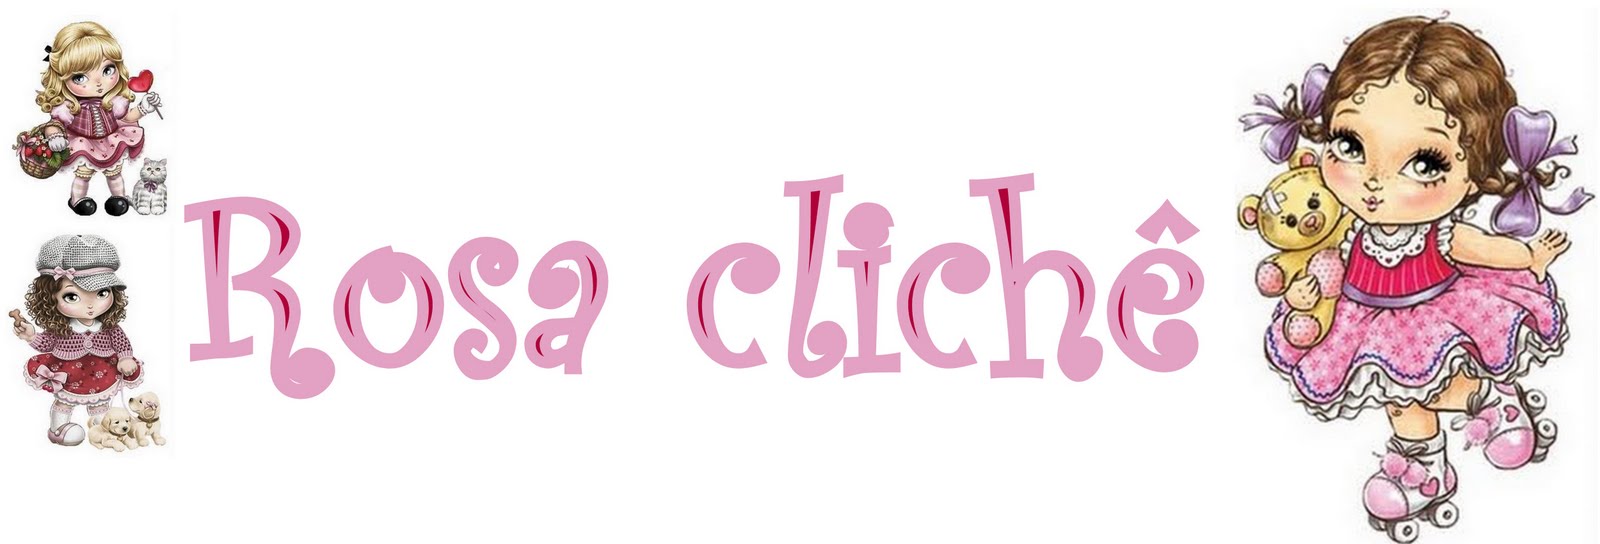 Rosa Clichê